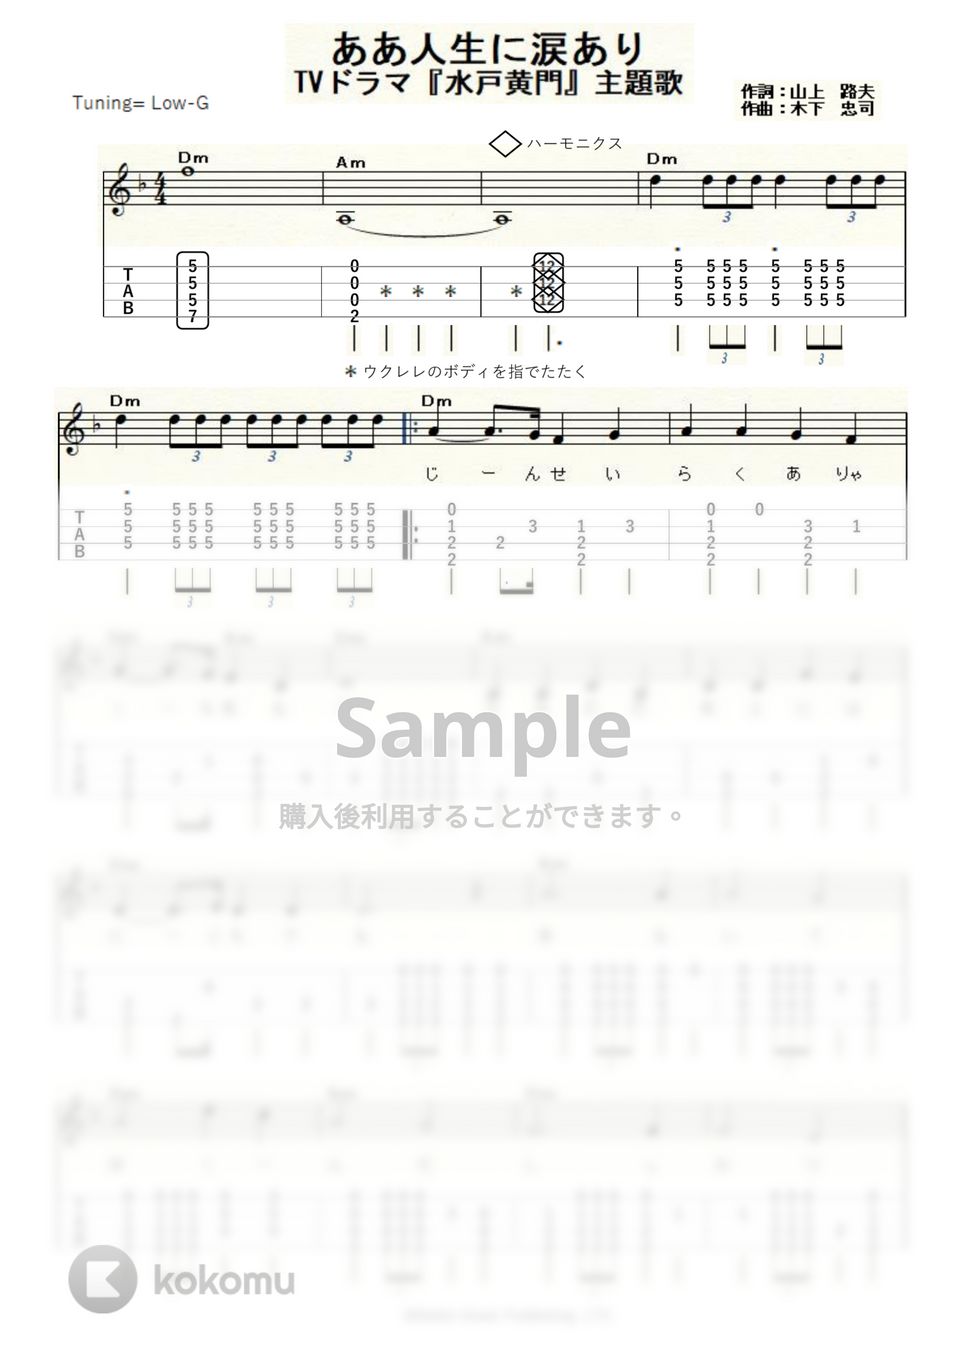 水戸黄門 - ああ人生に涙あり (ｳｸﾚﾚｿﾛ / Low-G / 中級) by ukulelepapa